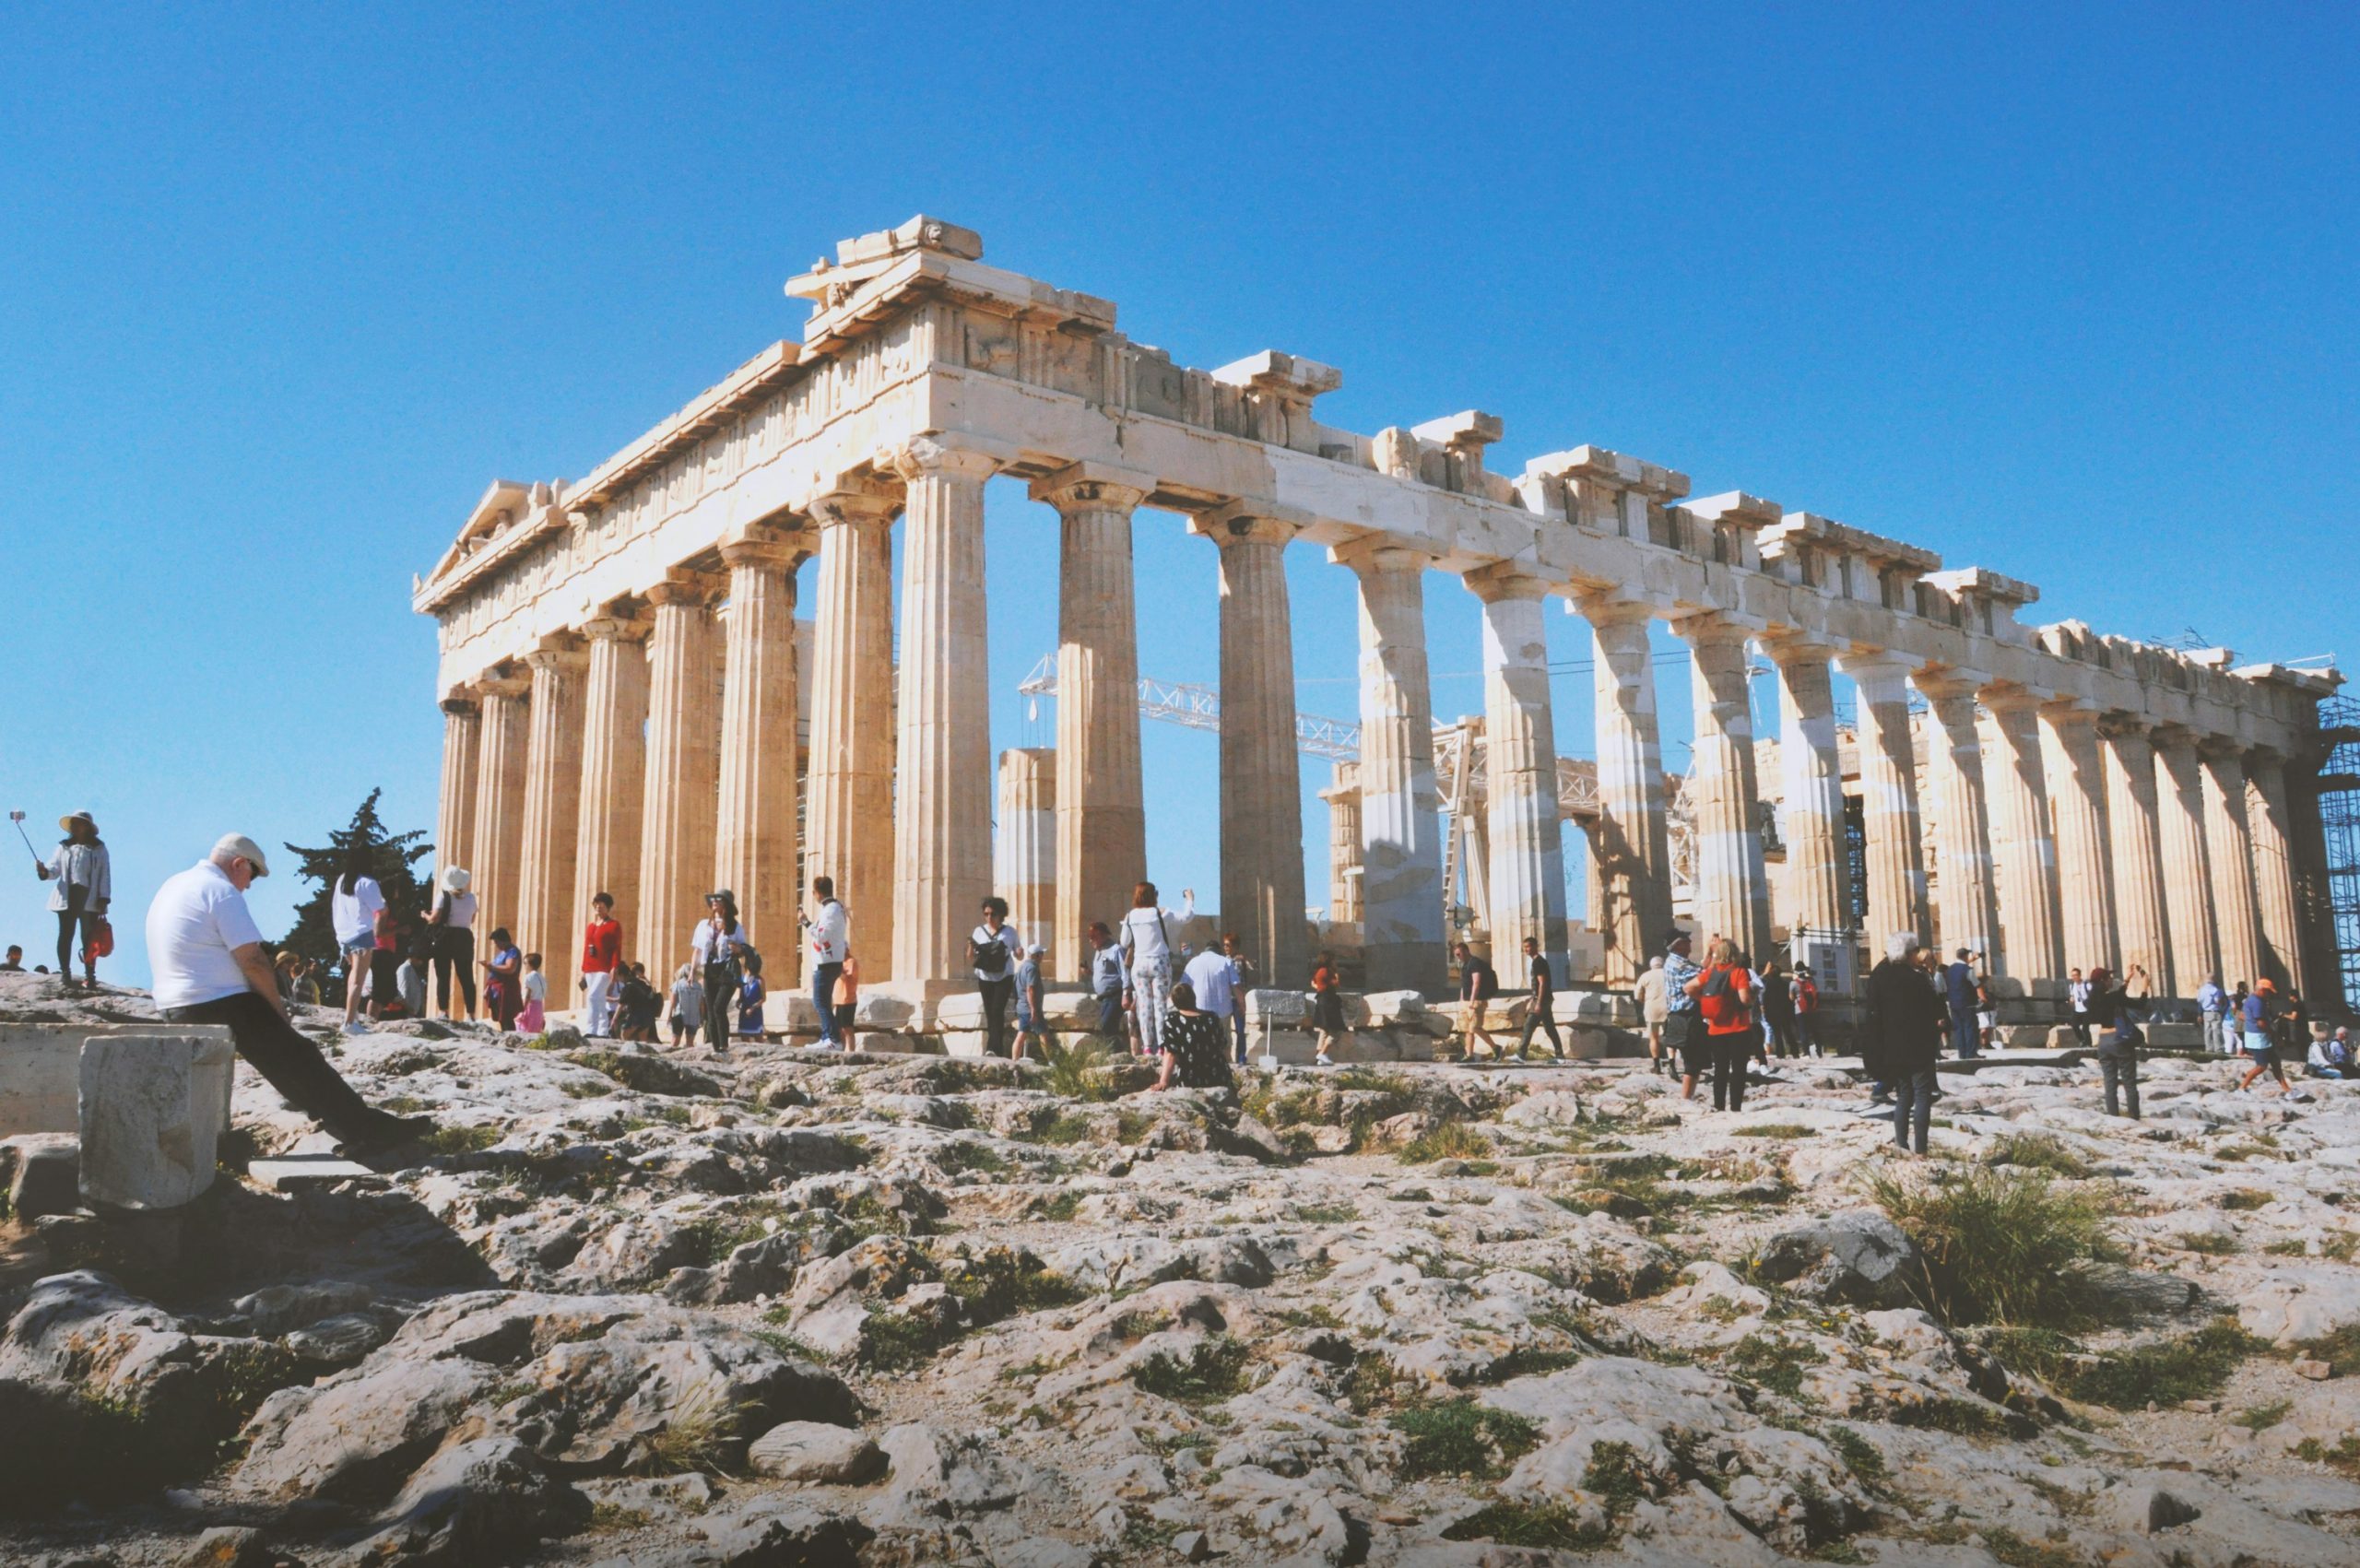 Η Ακρόπολη μέσα στα 10 καλύτερα ευρωπαϊκά αξιοθέατα, σύμφωνα με το TripAdvisor. Η λίστα αναλυτικά